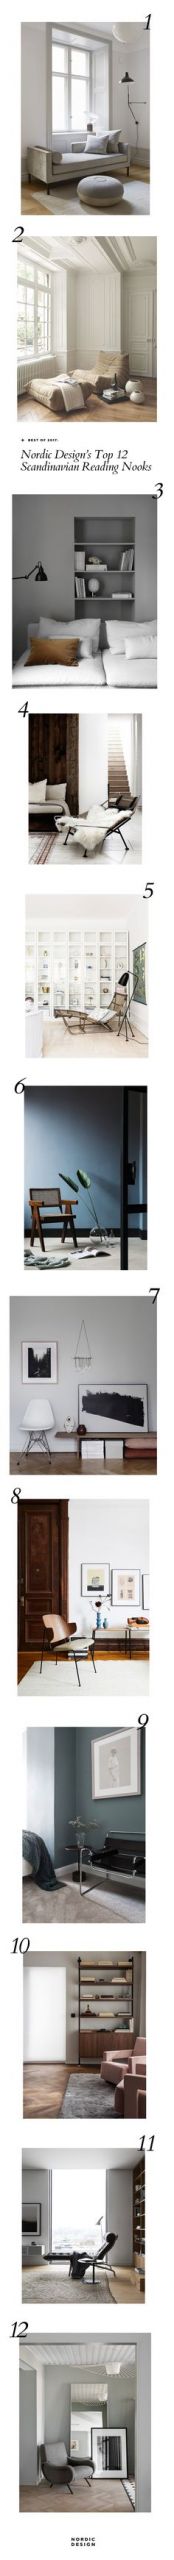 CanapÃ© De Jardin Bois Unique 52 Best Design Scandinavian Style Chairs Images